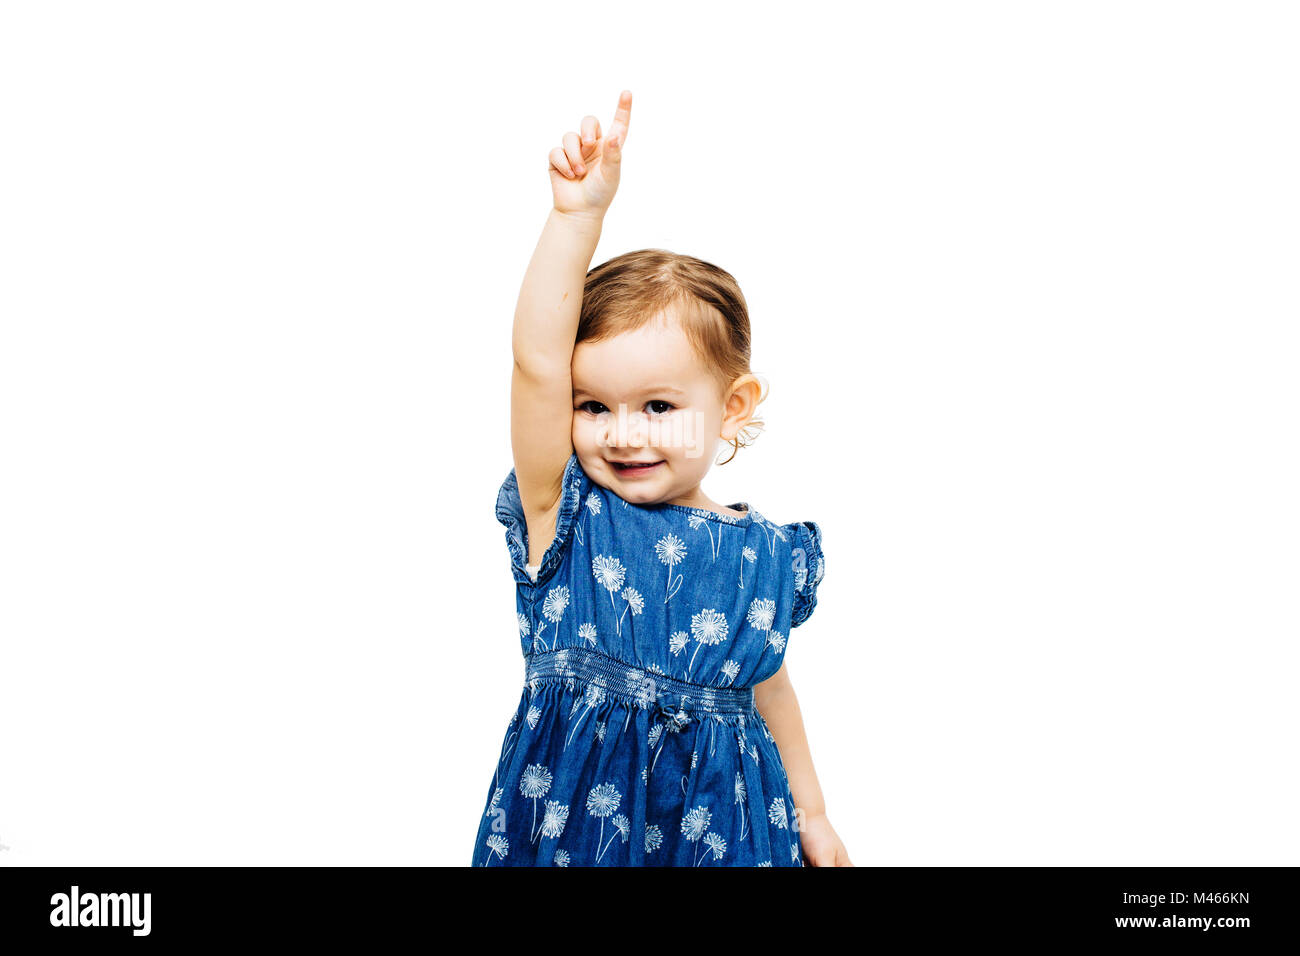 Girl raising hand avec l'index pointant vers le haut Banque D'Images